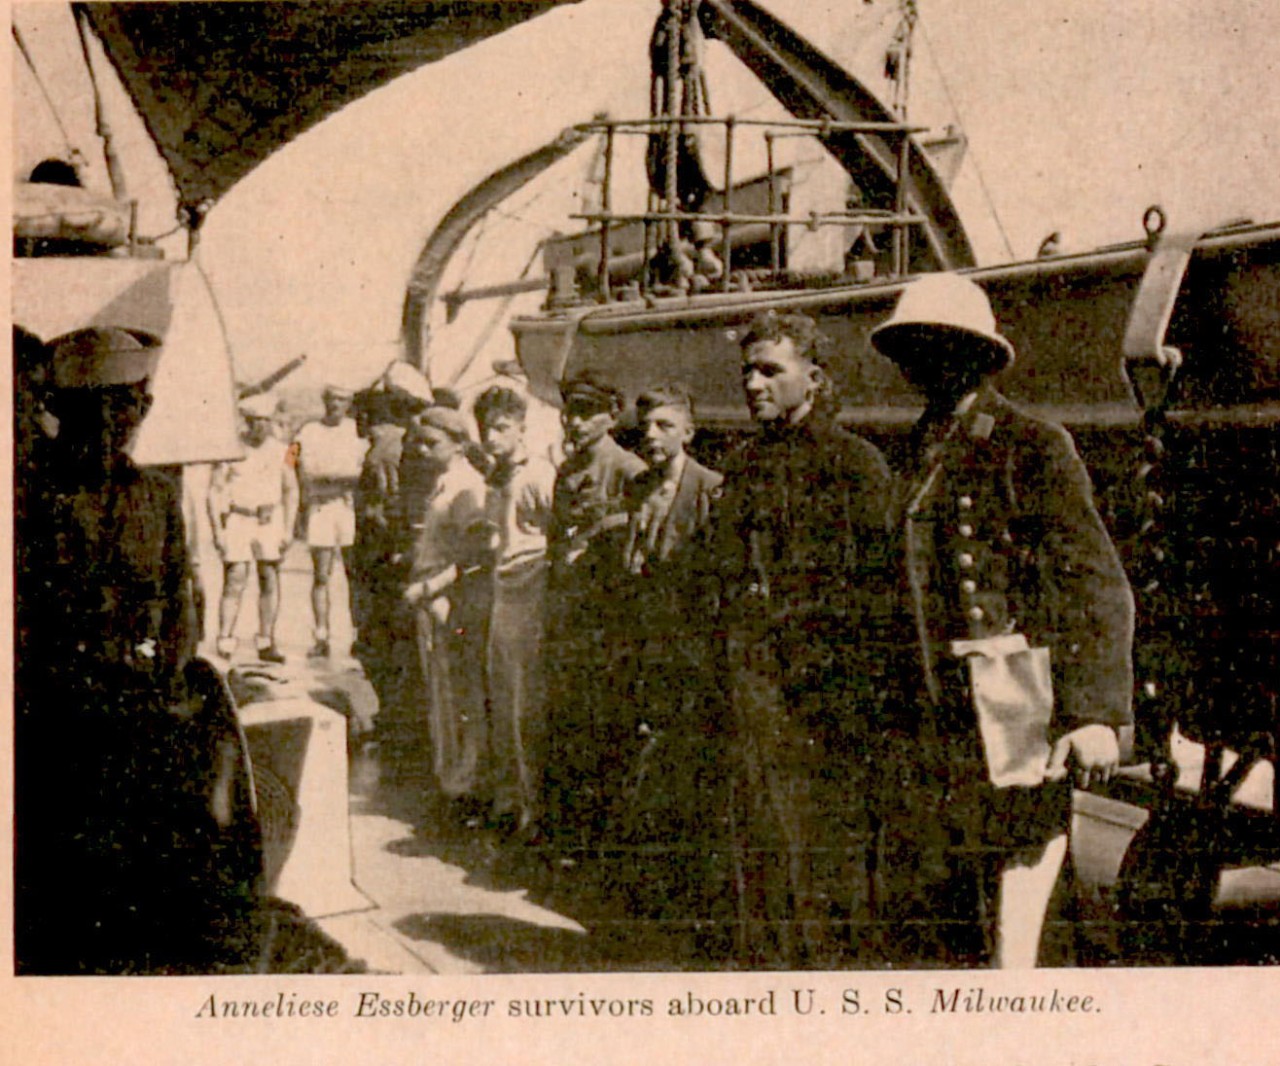 Anneliese Essberger survivors aboard U.S.S. Milwaukee